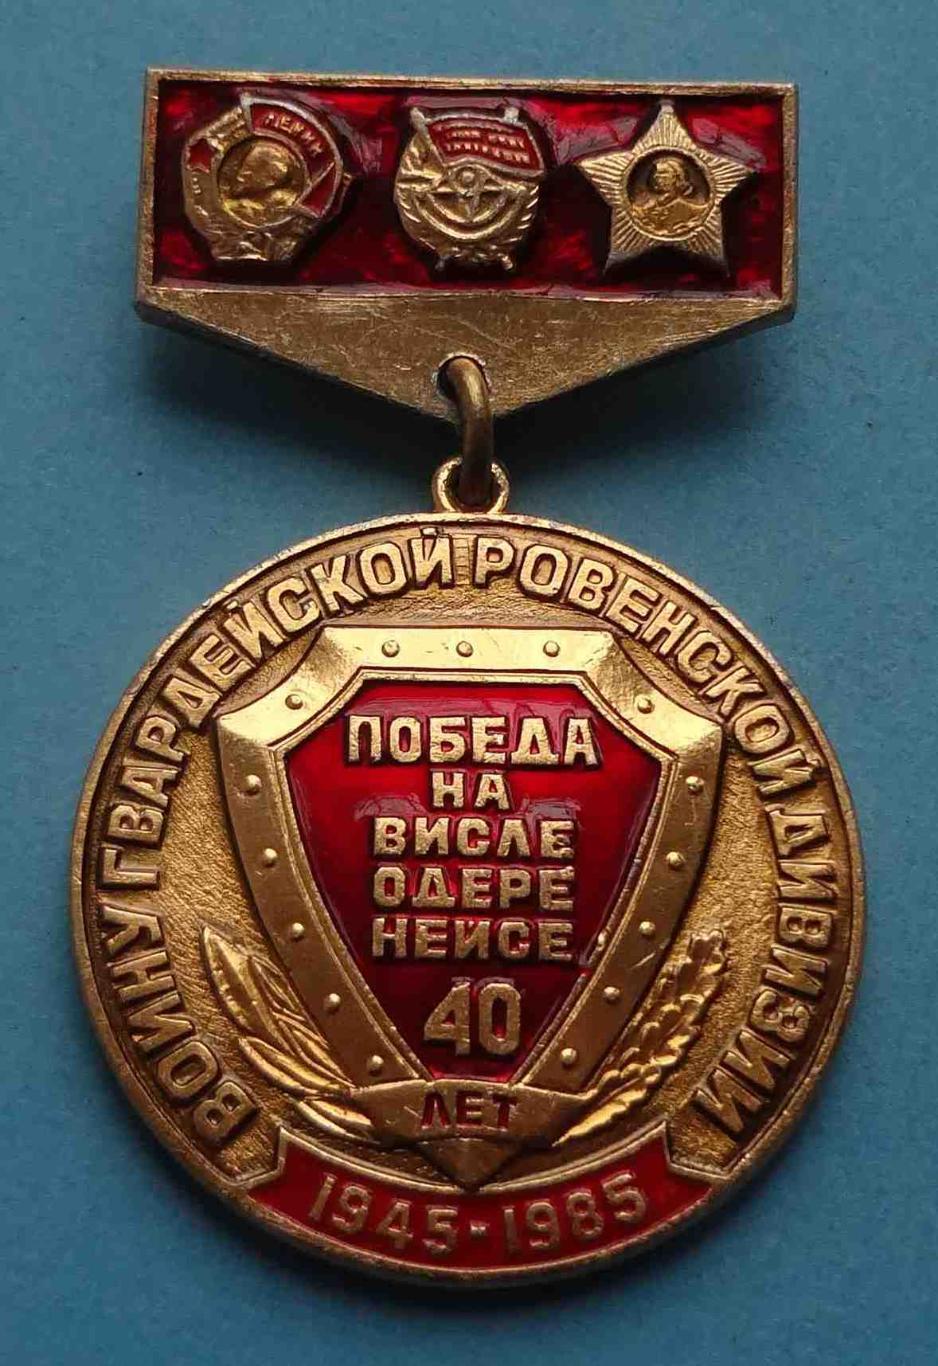 40 лет Воину гвардейской Ровенской дивизии Победа на Висле Одере Нейсе 1985 (23)